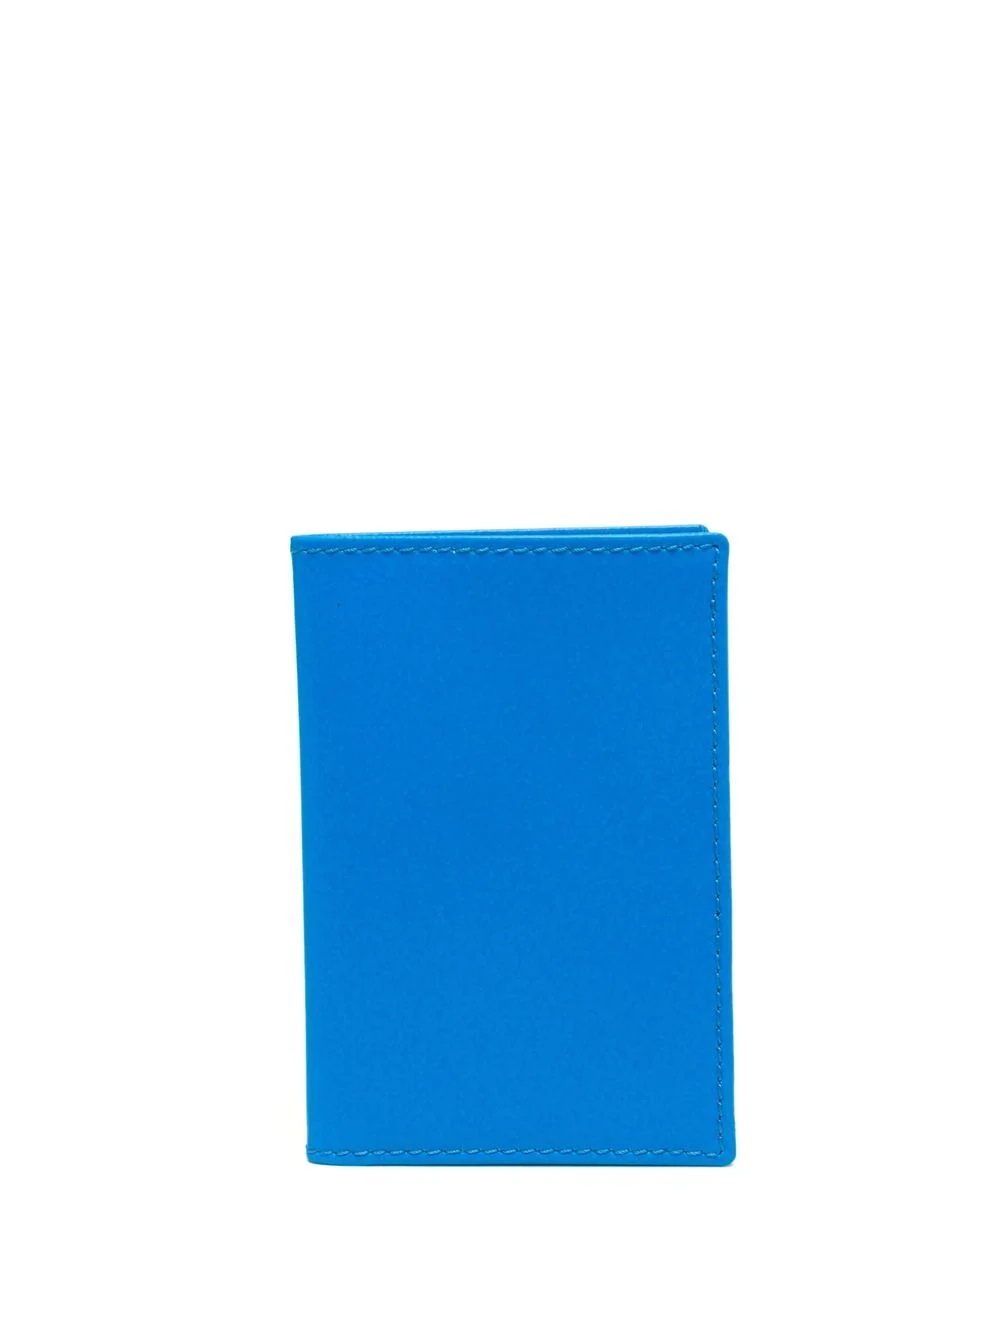 color-block fodling wallet - 1